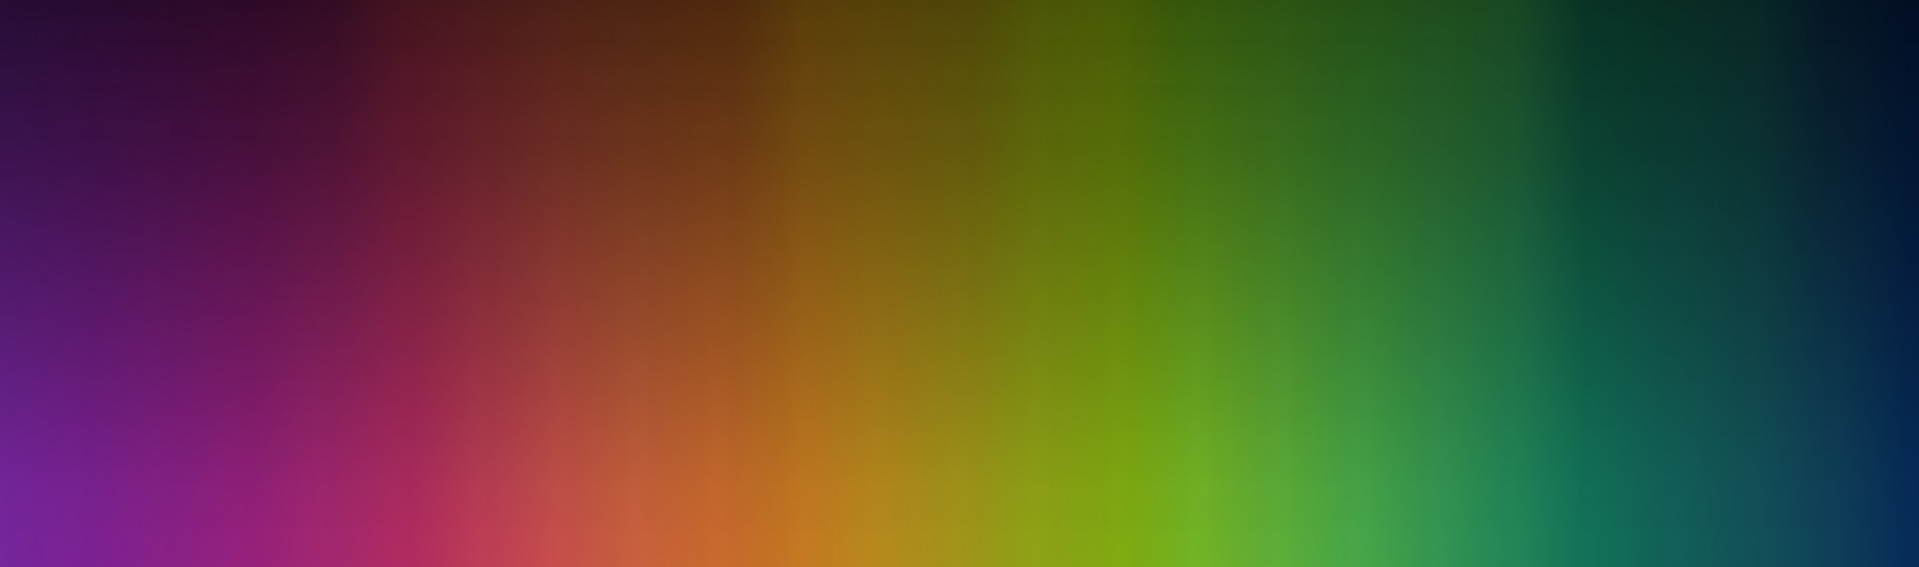 Spectrum cores se misturam Gradiente